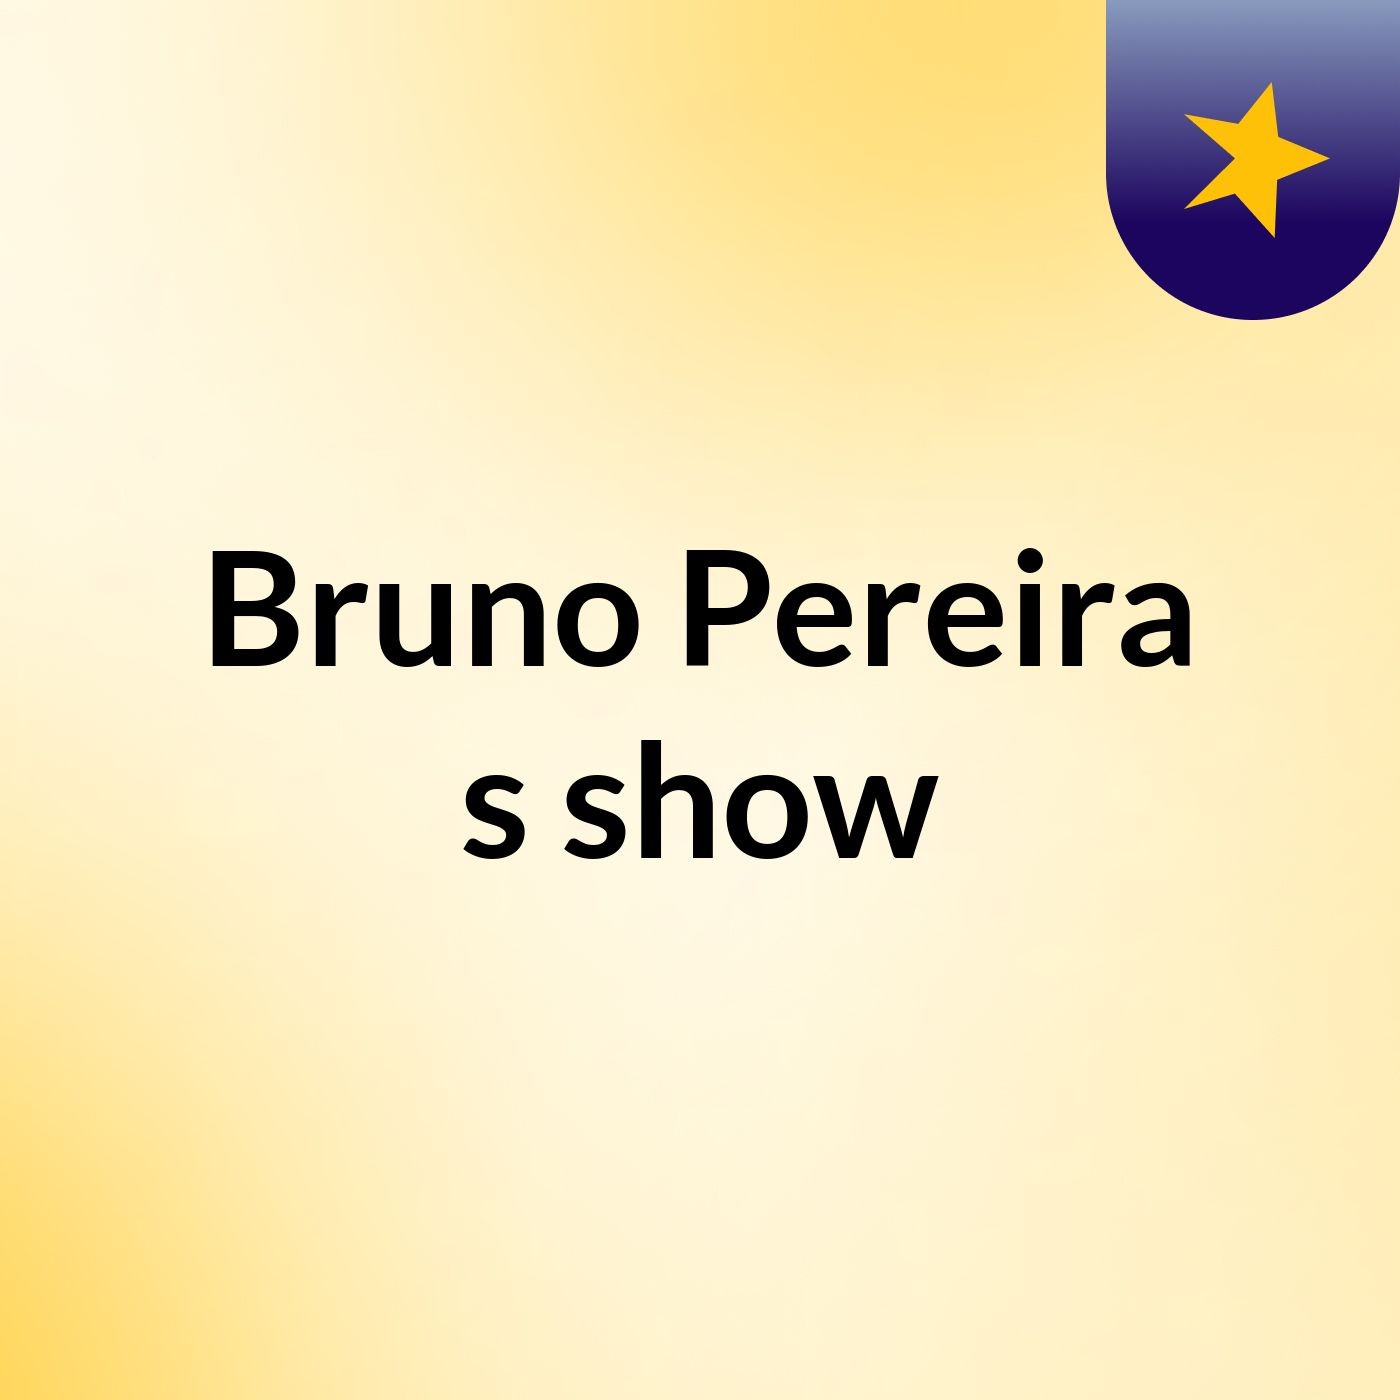 Bruno Pereira's show